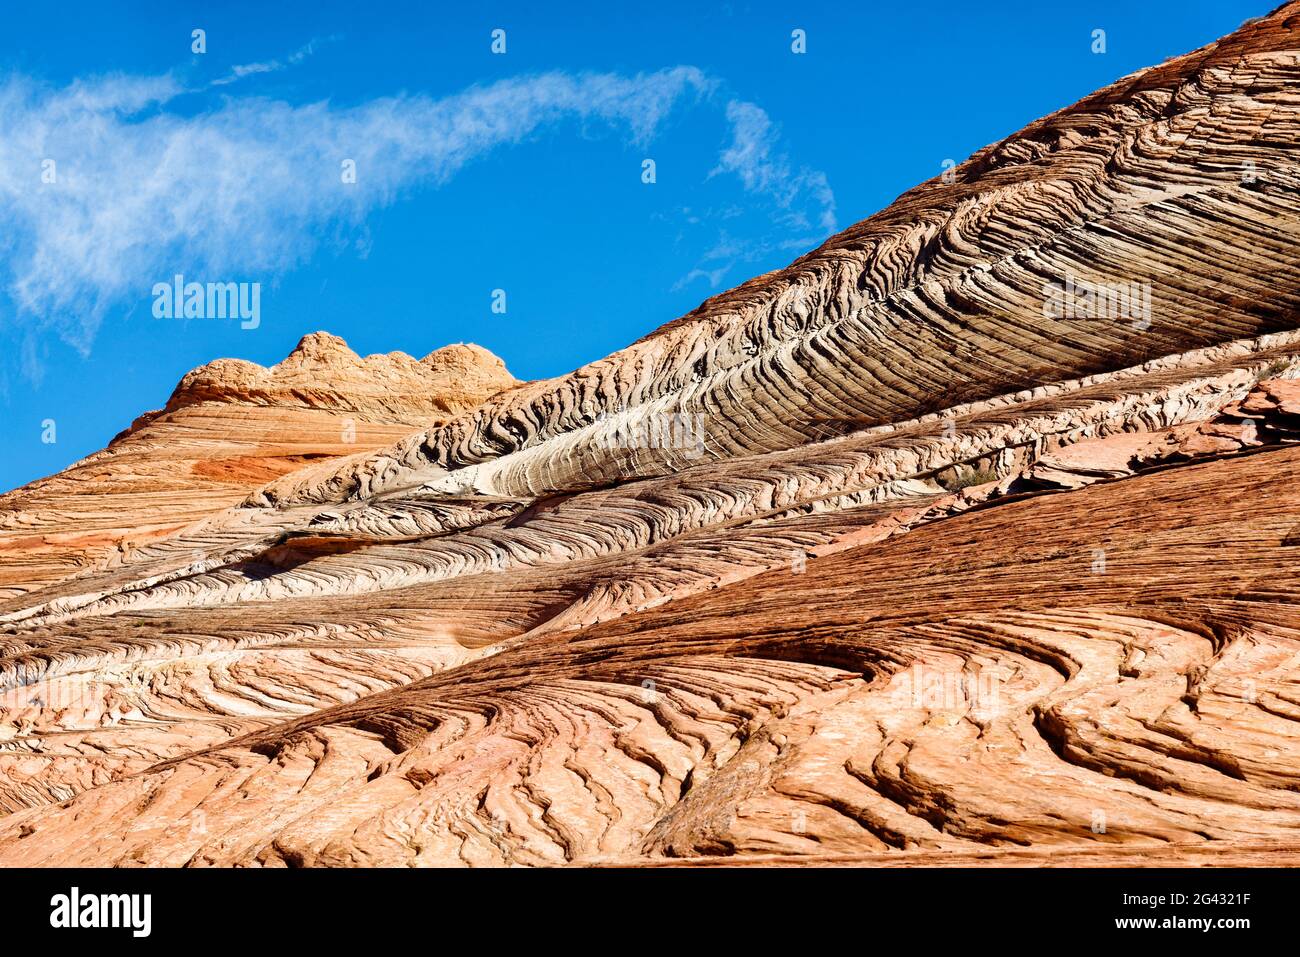 Majestic sandstone rock formation in desert, Utah, USA Stock Photo